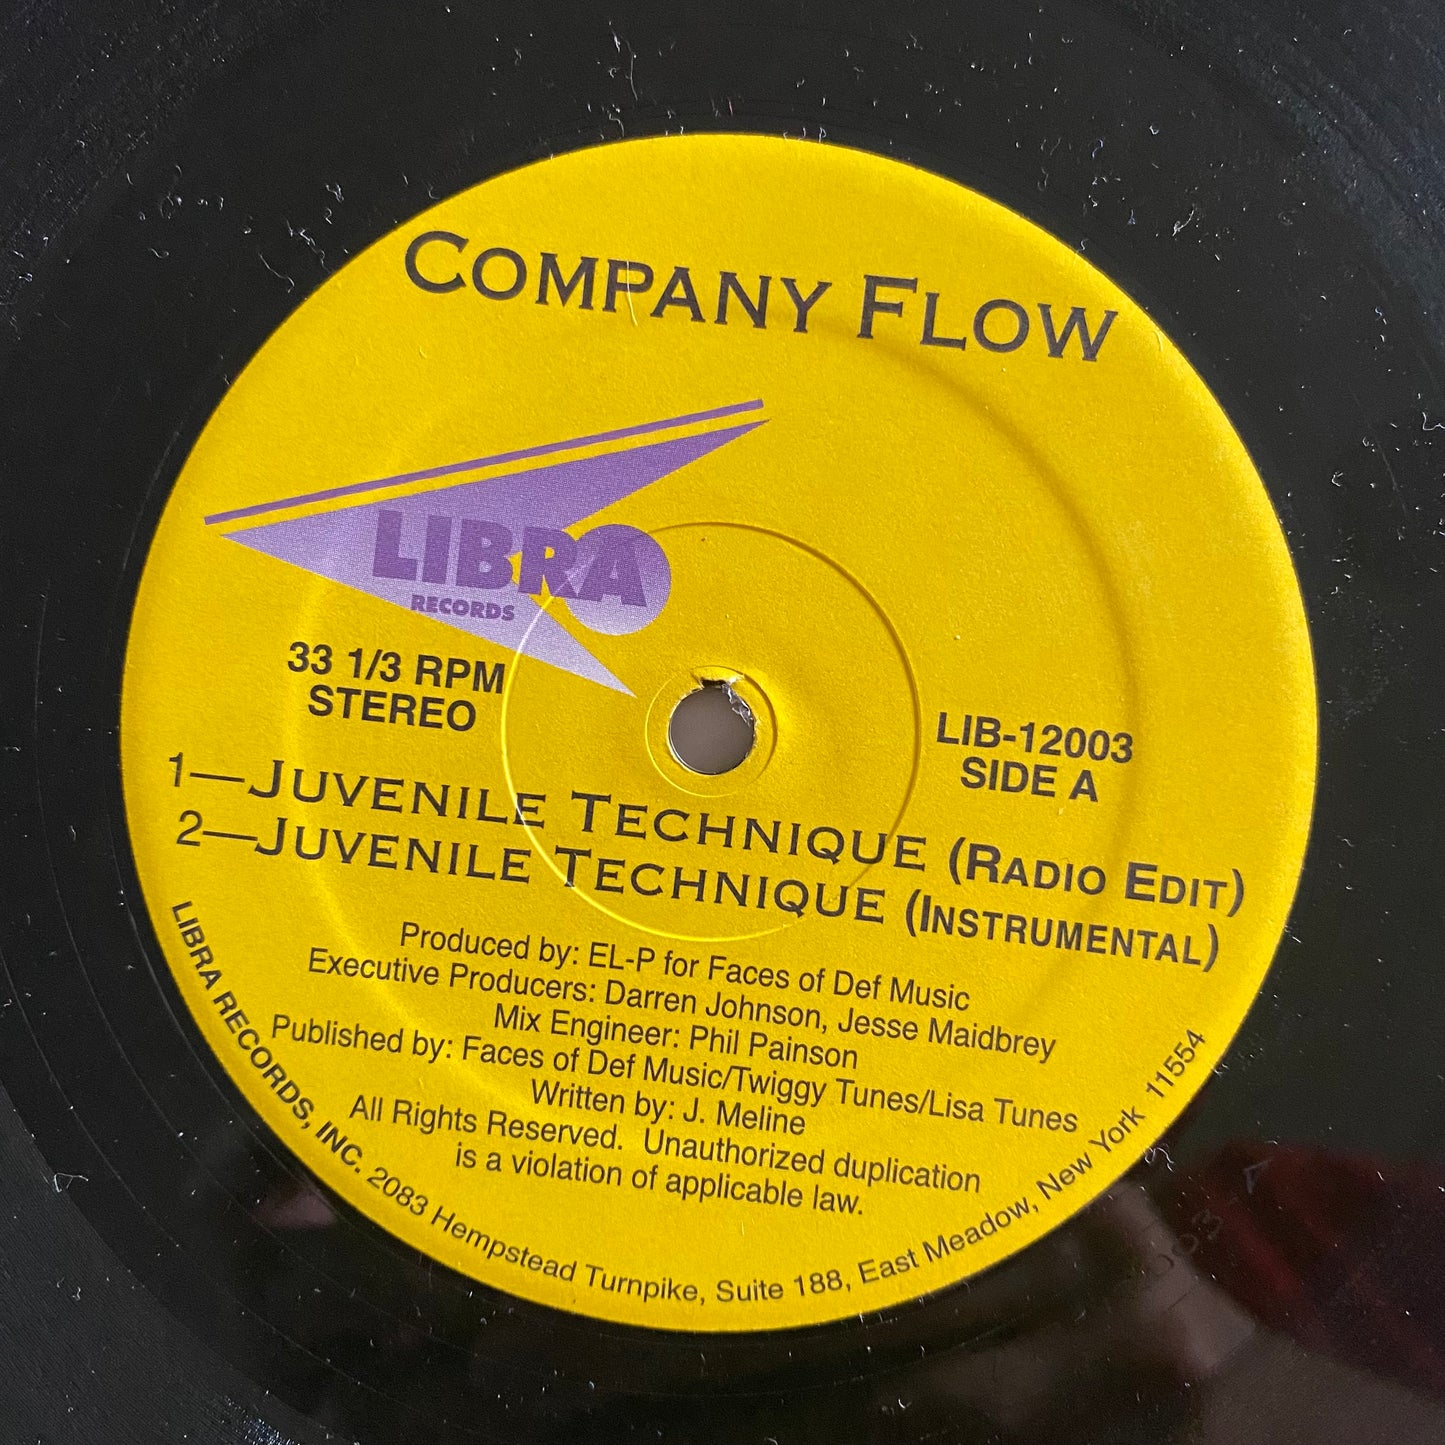 Company Flow - Juvenile Technique (12", Single, Unofficial) 12" HIP-HOP